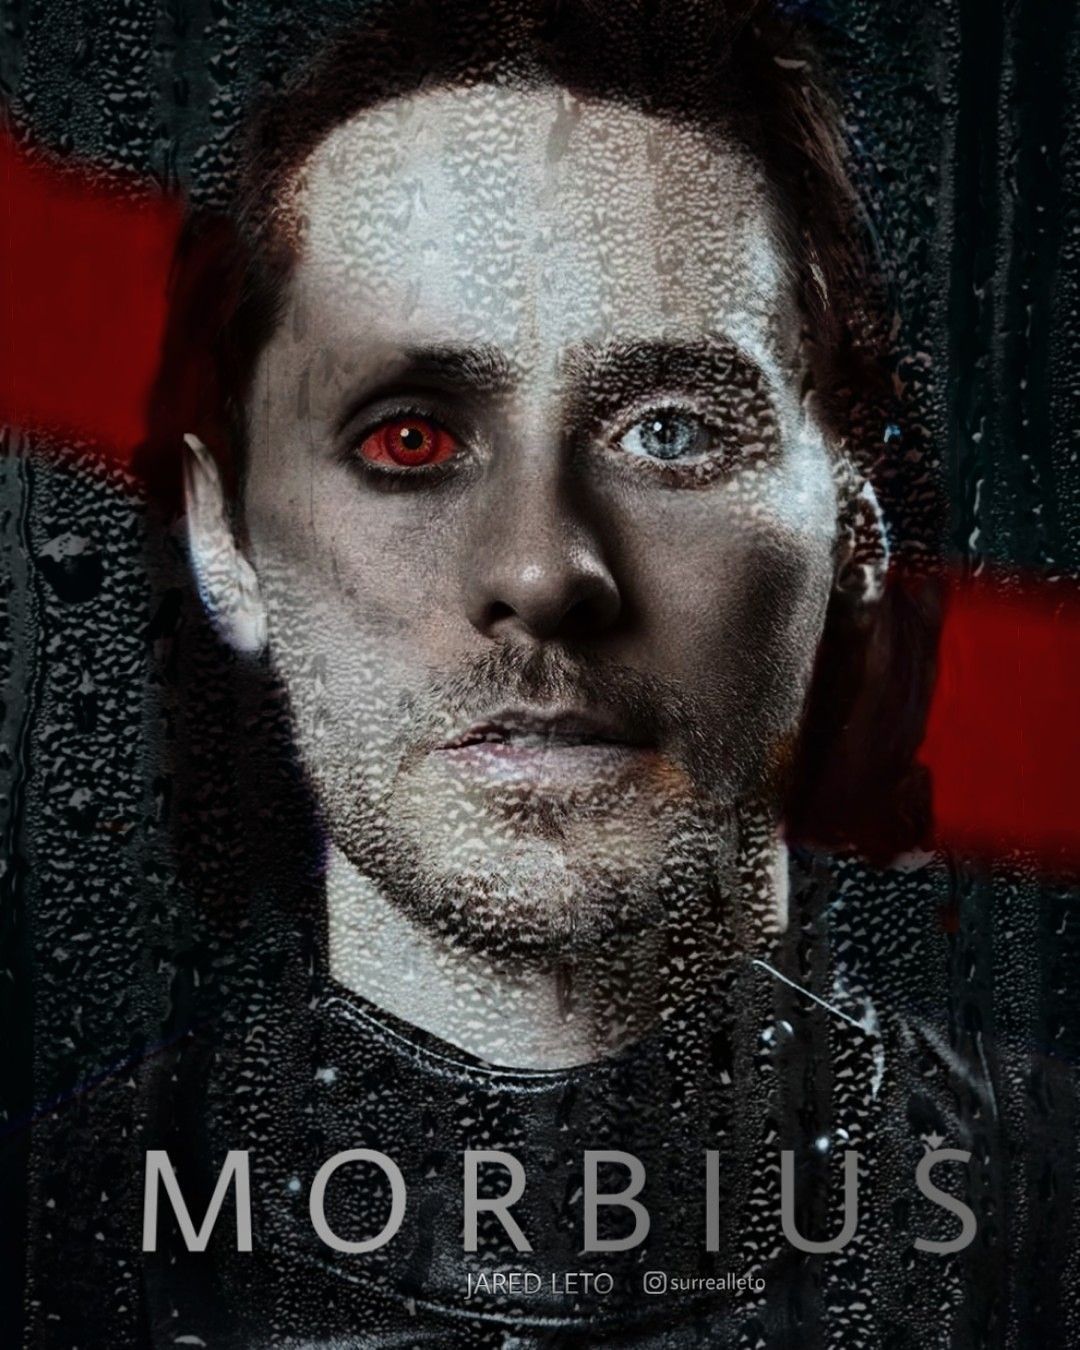 Morbius (Jared Leto) ideas. jared leto, morbius the living vampire, jared